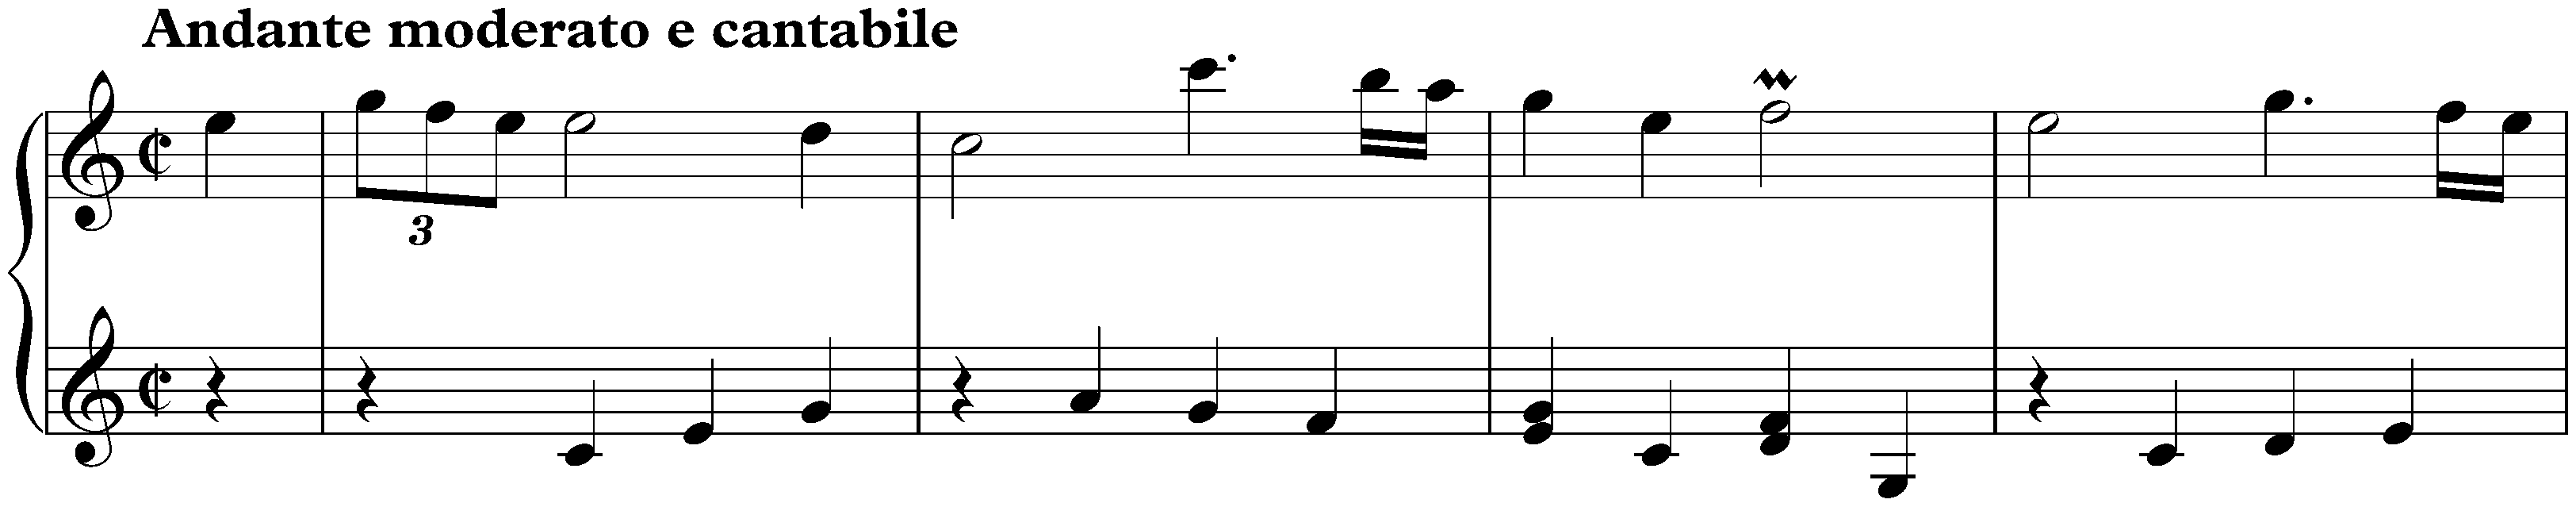 Sonata in C major, K. 170